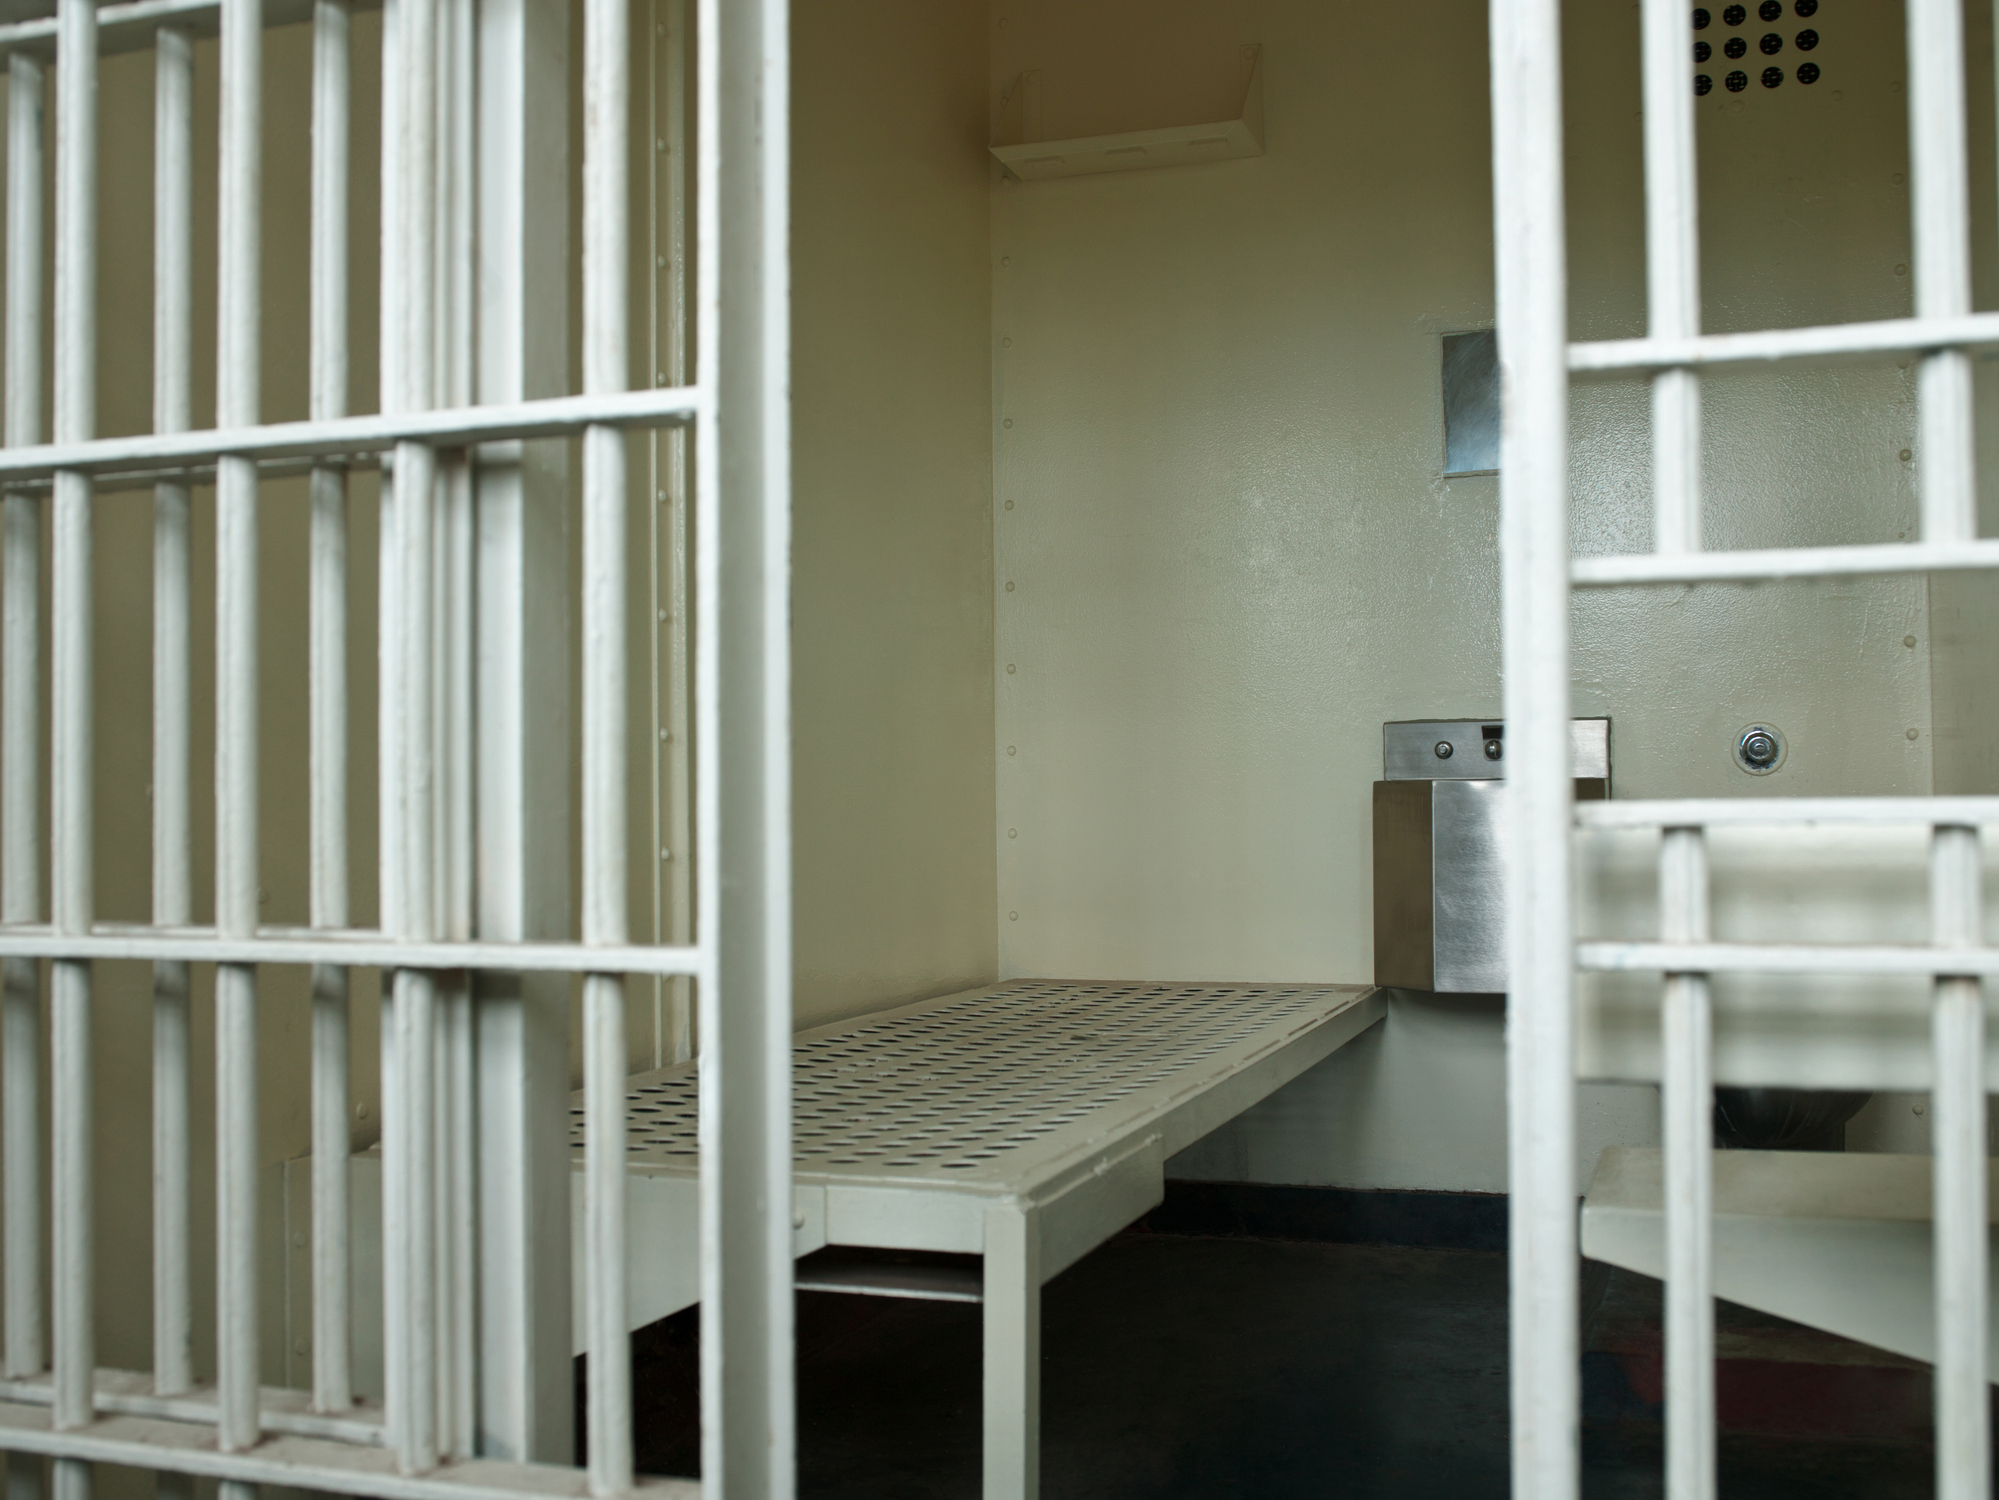 rochester ny jail inmates